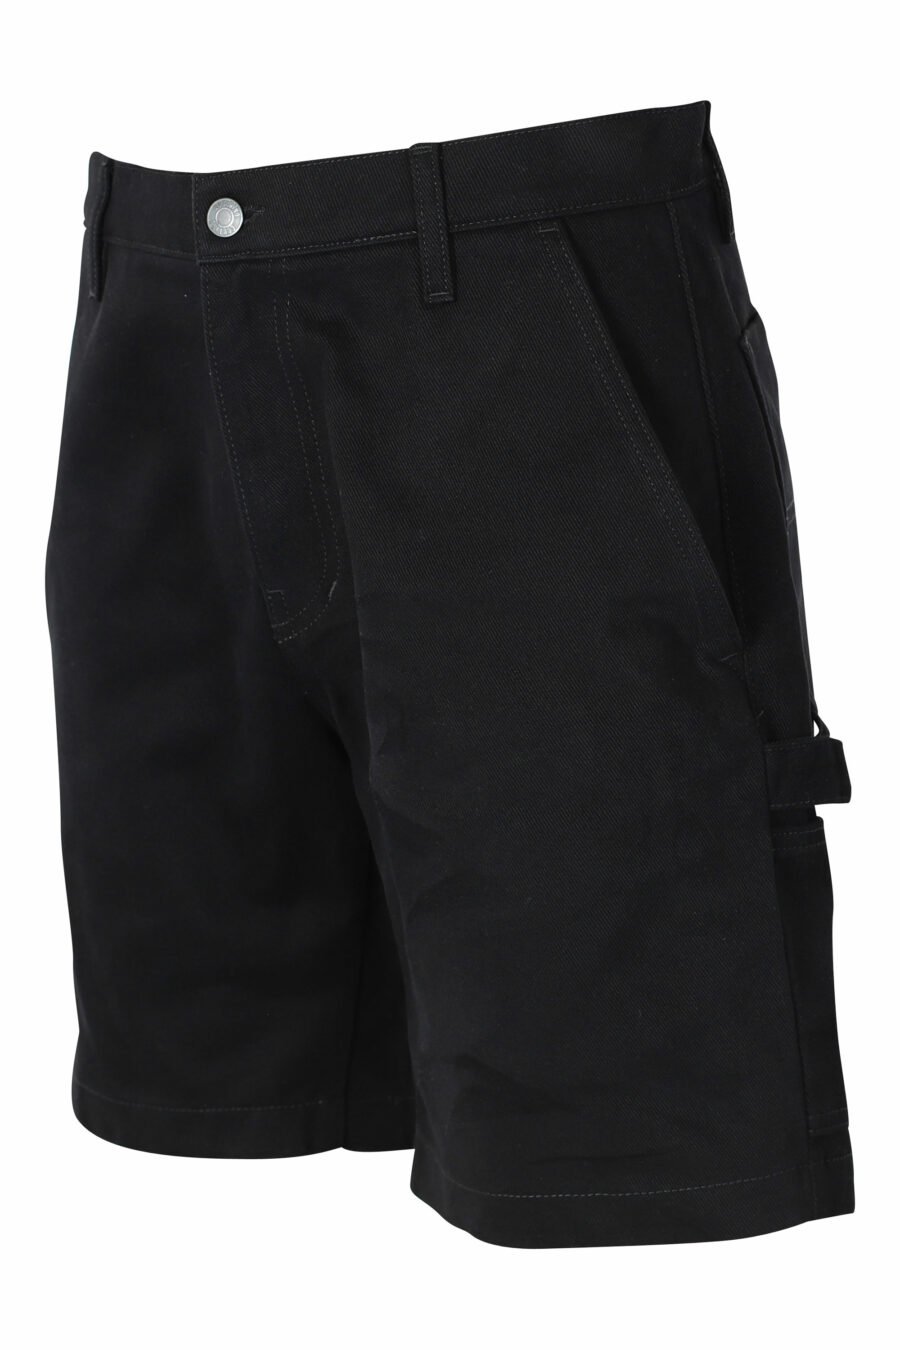 Pantalón vaquero corto negro con bolsillos laterales - IMG 9566